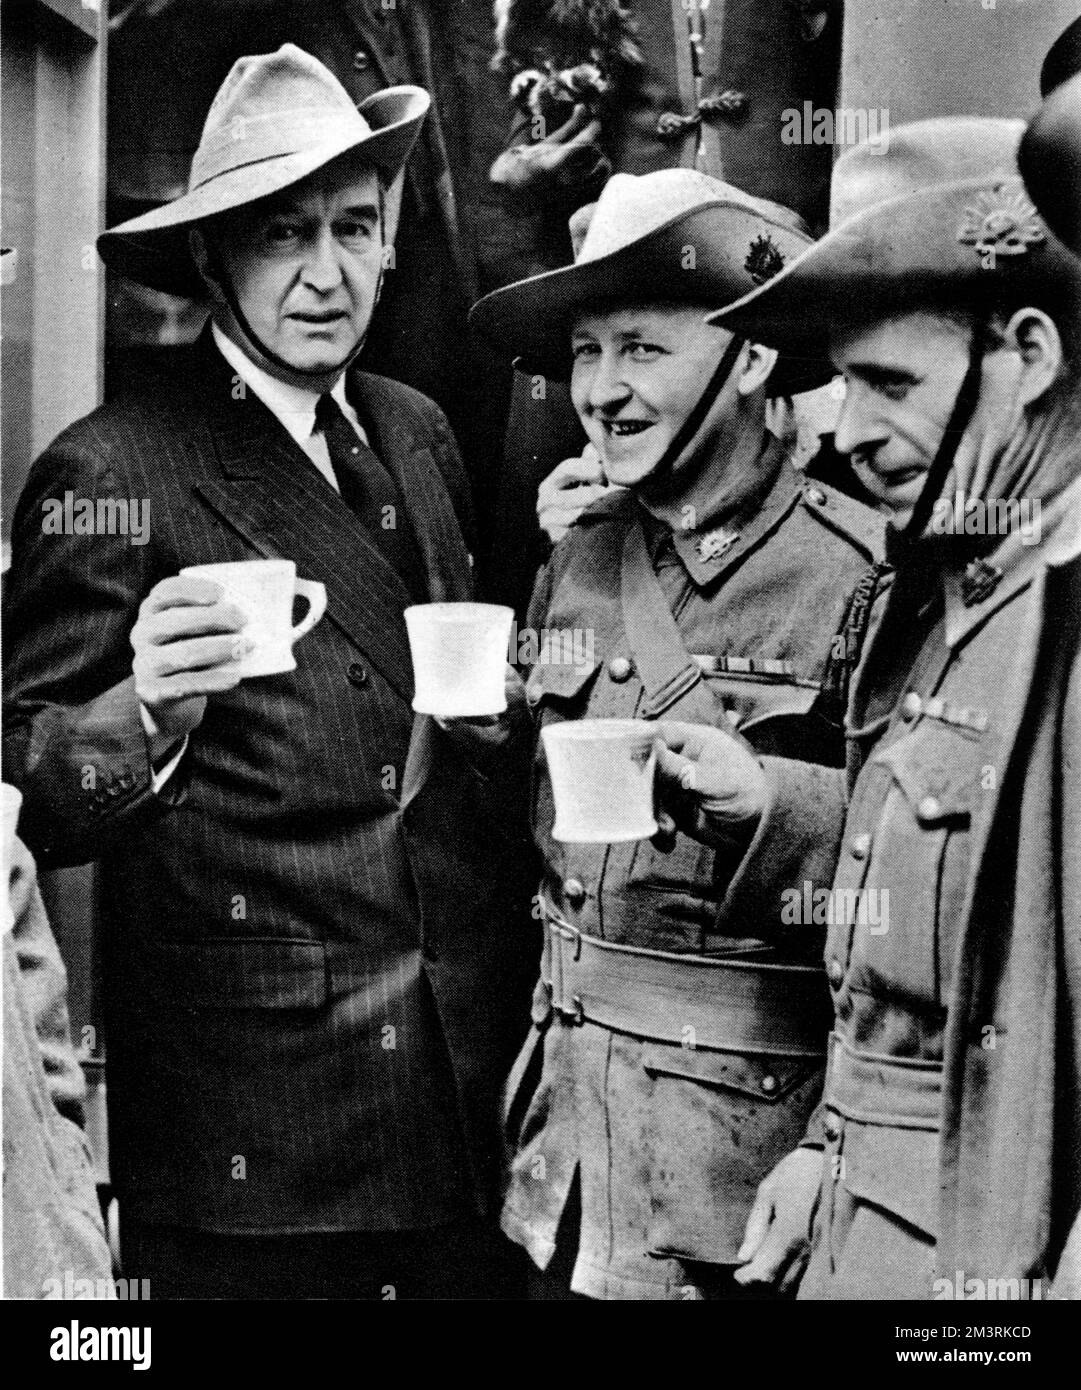 Der australische hohe Kommissar Stanley Bruce (links) steht neben zwei seiner Landsleute vor dem Strand Theatre in London. Alle drei probieren Tee aus einer neuen mobilen Kantine, die gerade in einer Zeremonie im Theater präsentiert wurde. 1940 Stockfoto